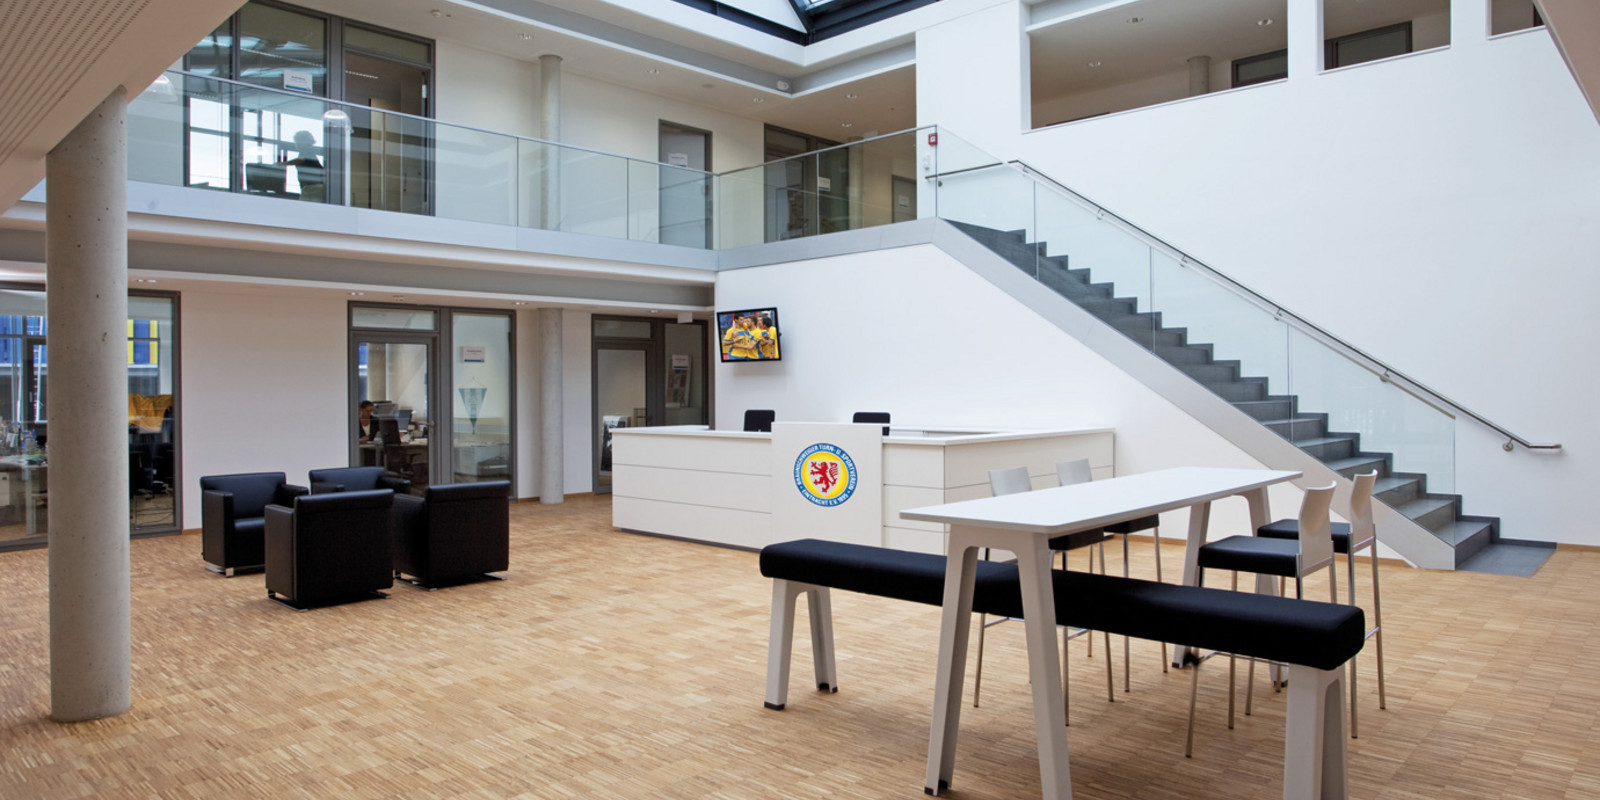 Eintracht Braunschweig von pro office Büro + Wohnkultur eingerichtet Bild 2